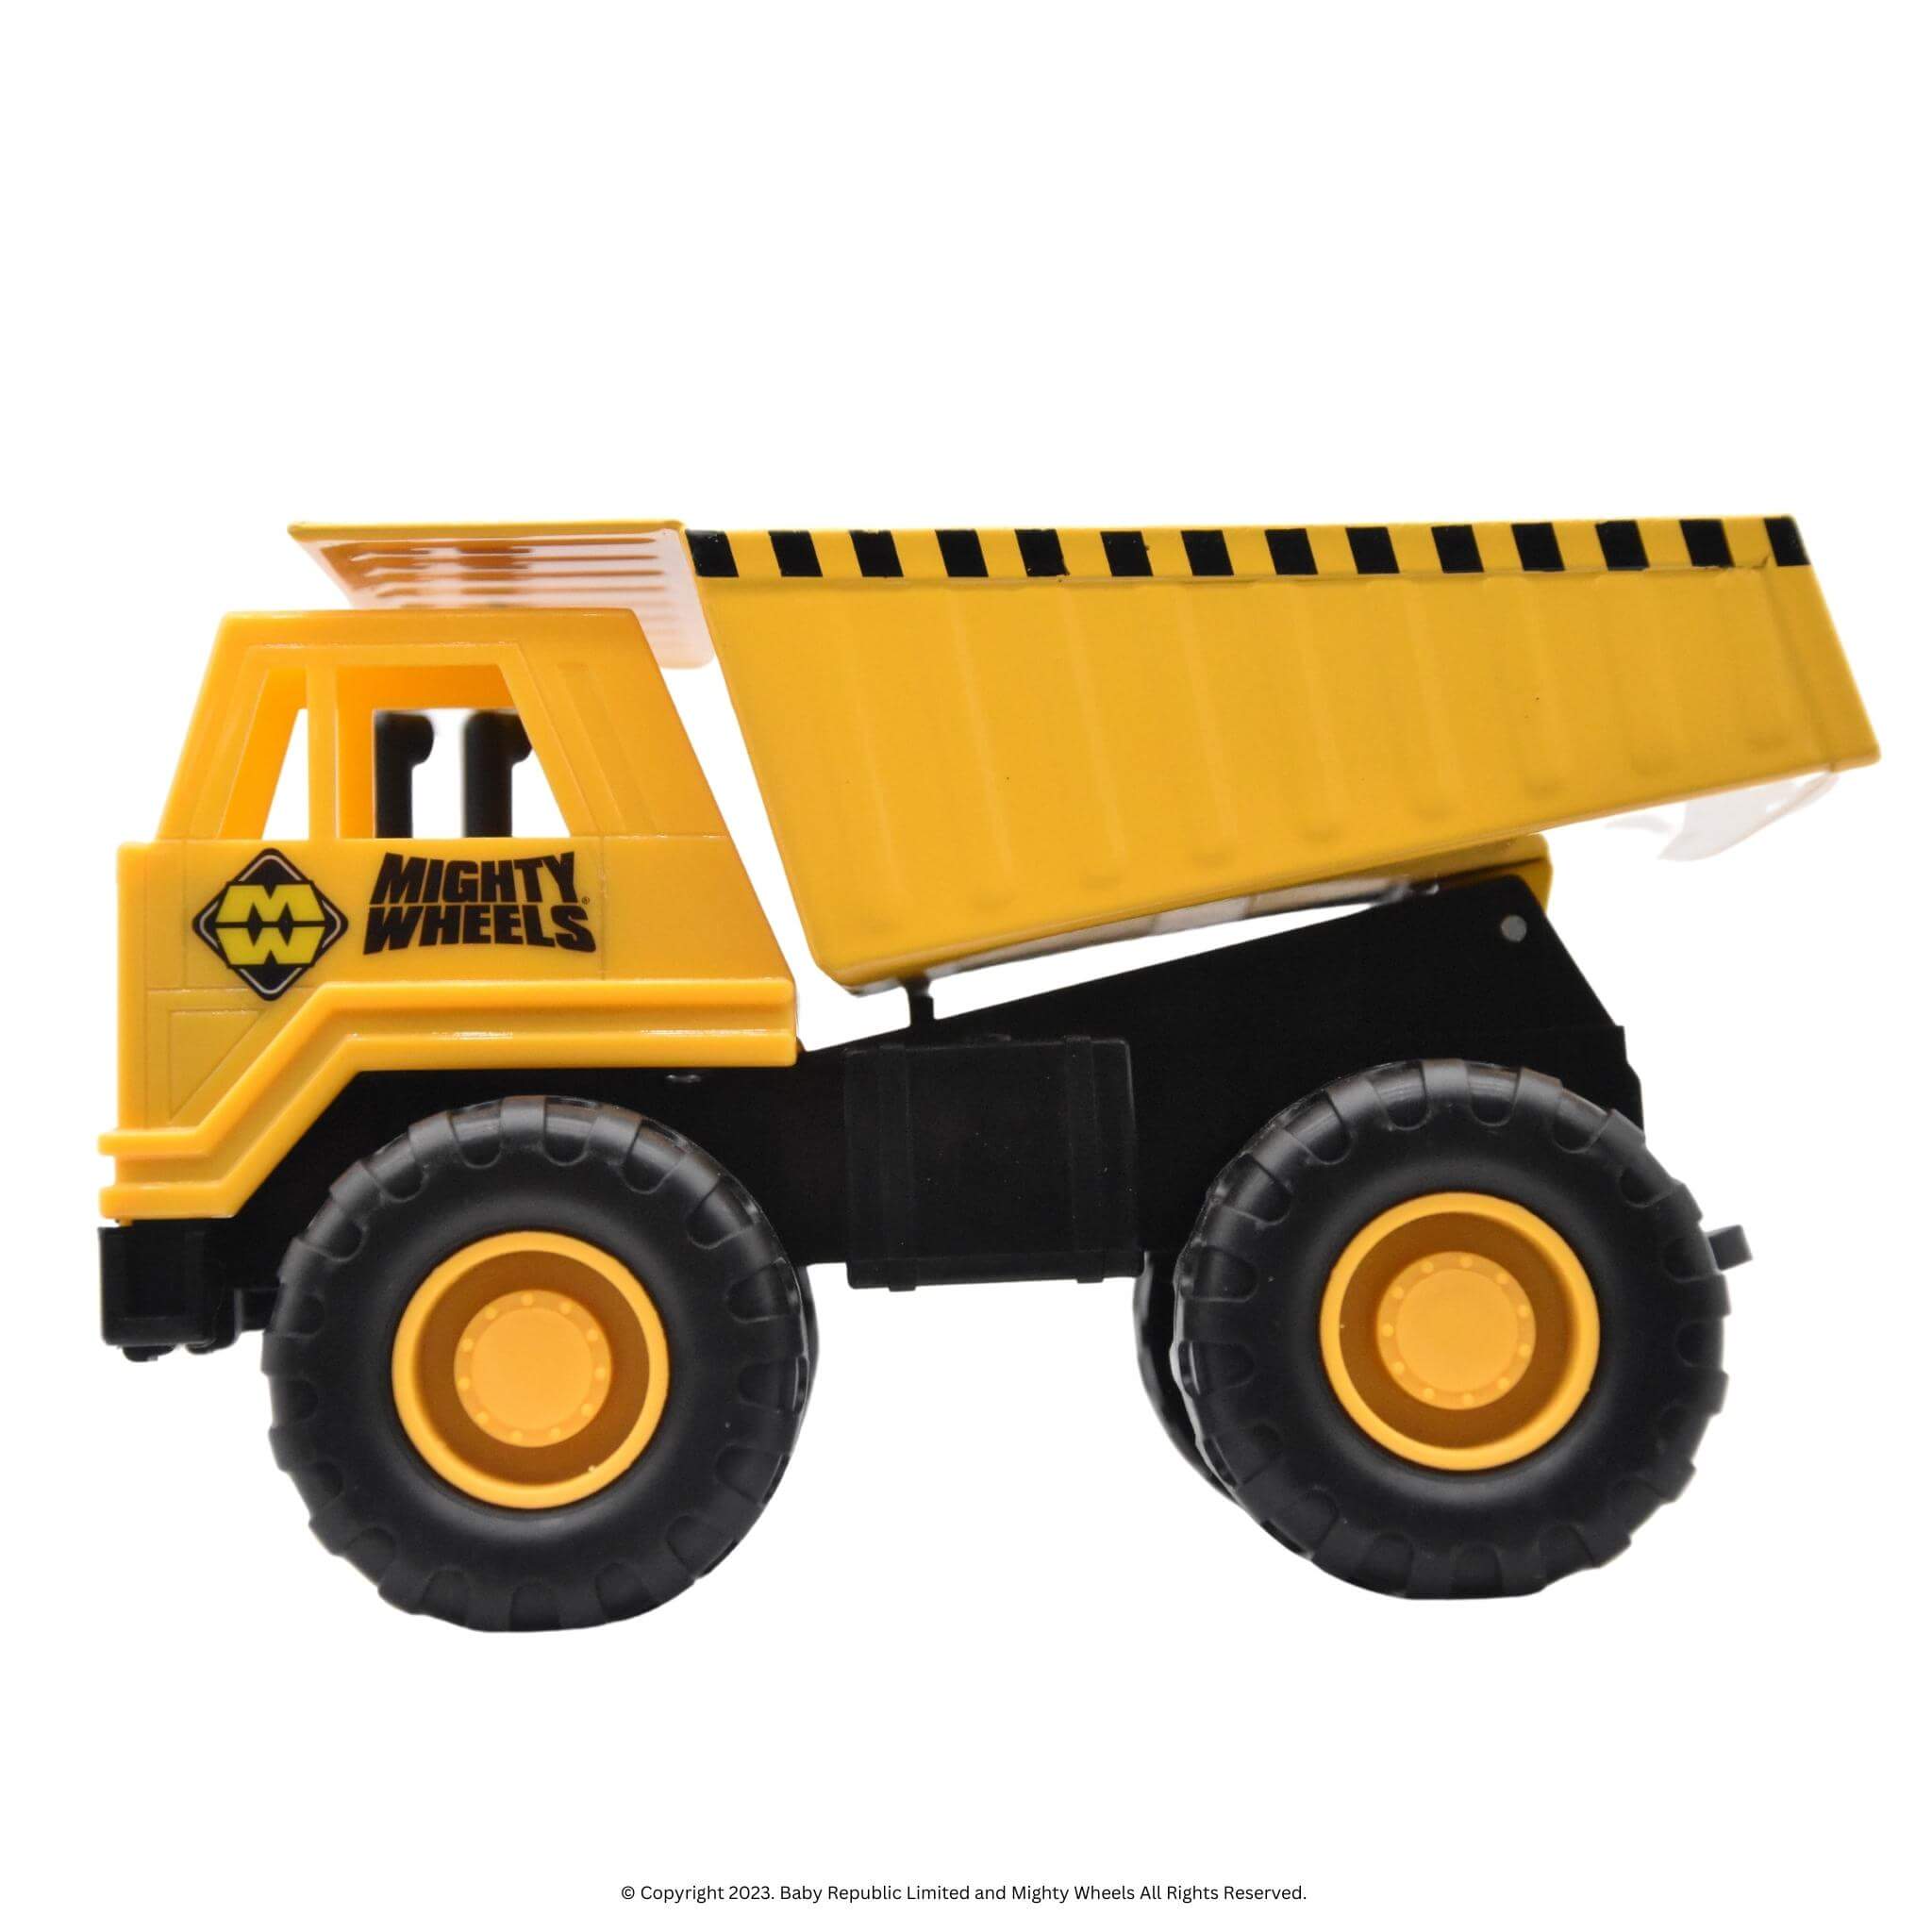 7”-Mighty-Wheels-Dump-Truck